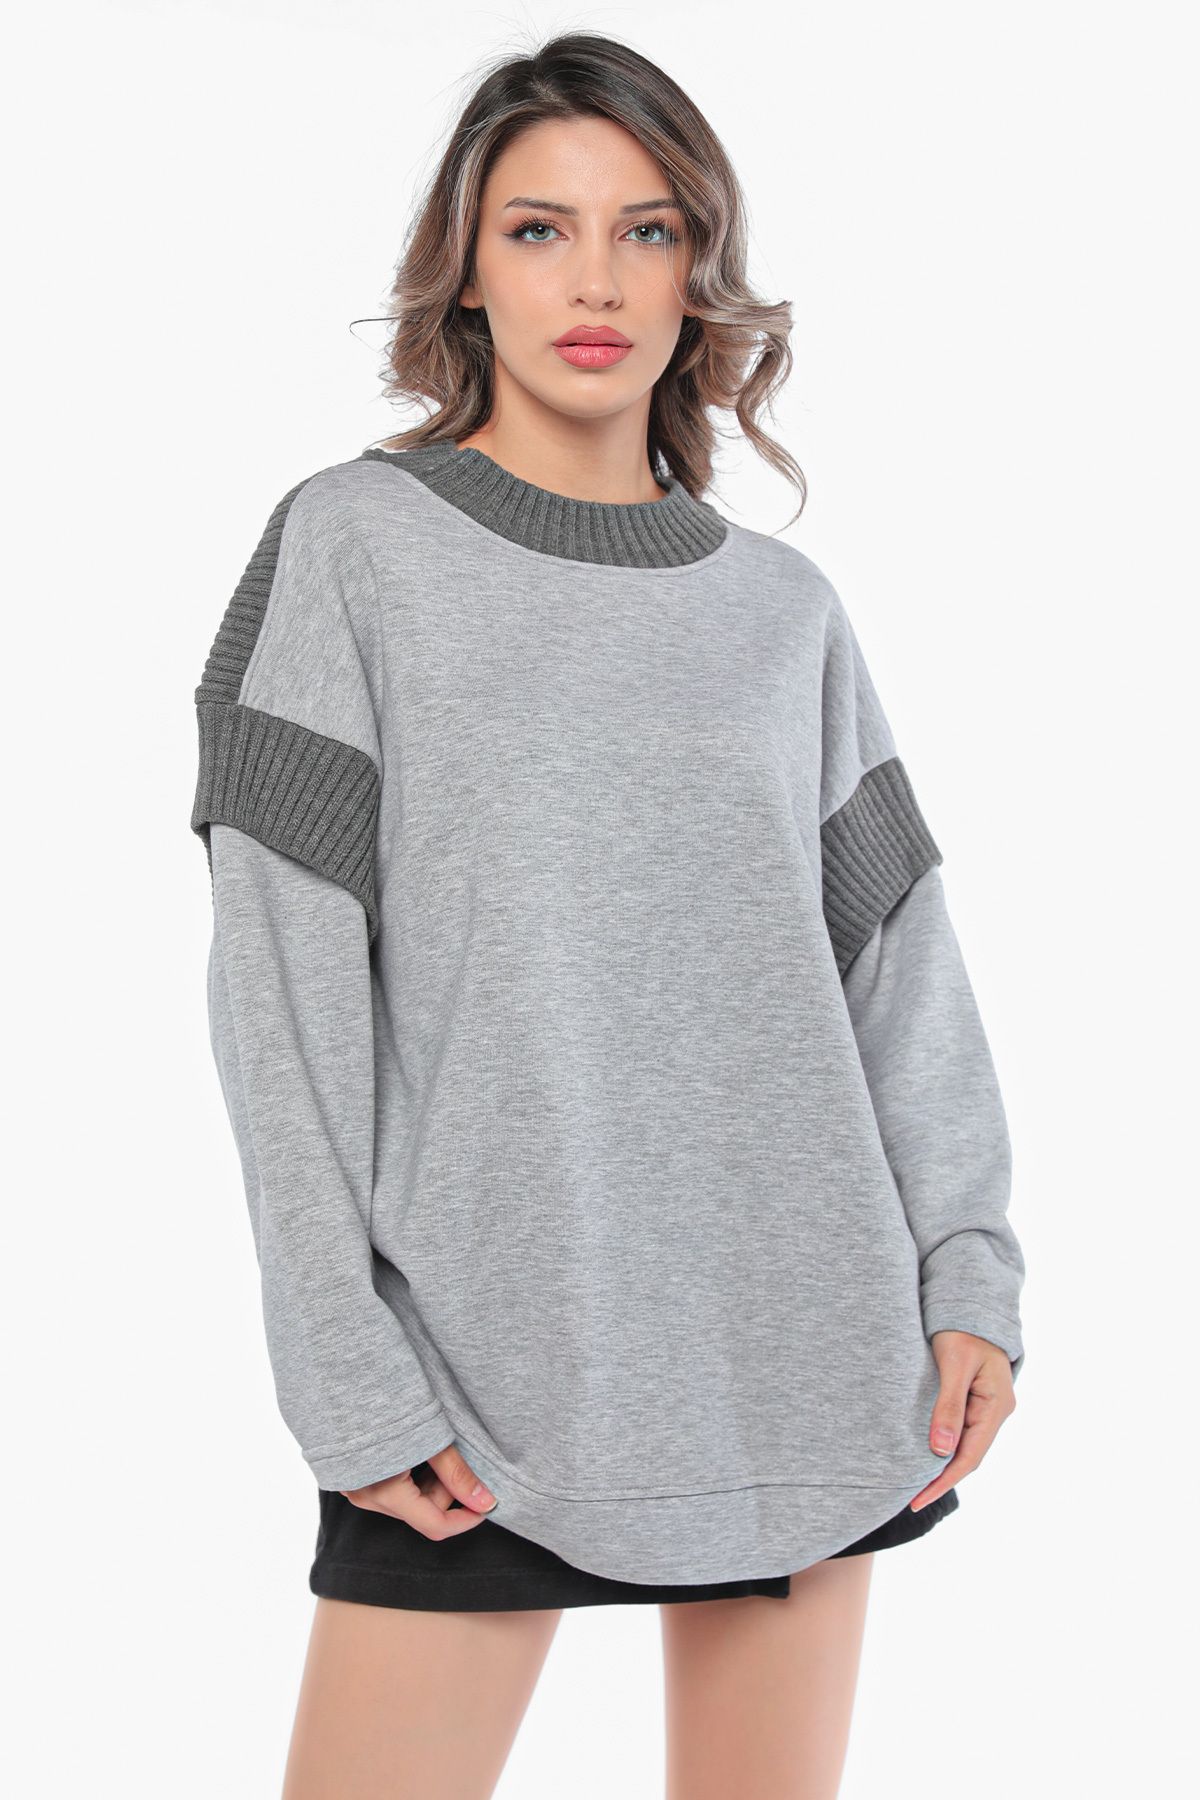 Julude Gri Kadın Yaka Ve Kol Triko Detaylı Sweatshirt